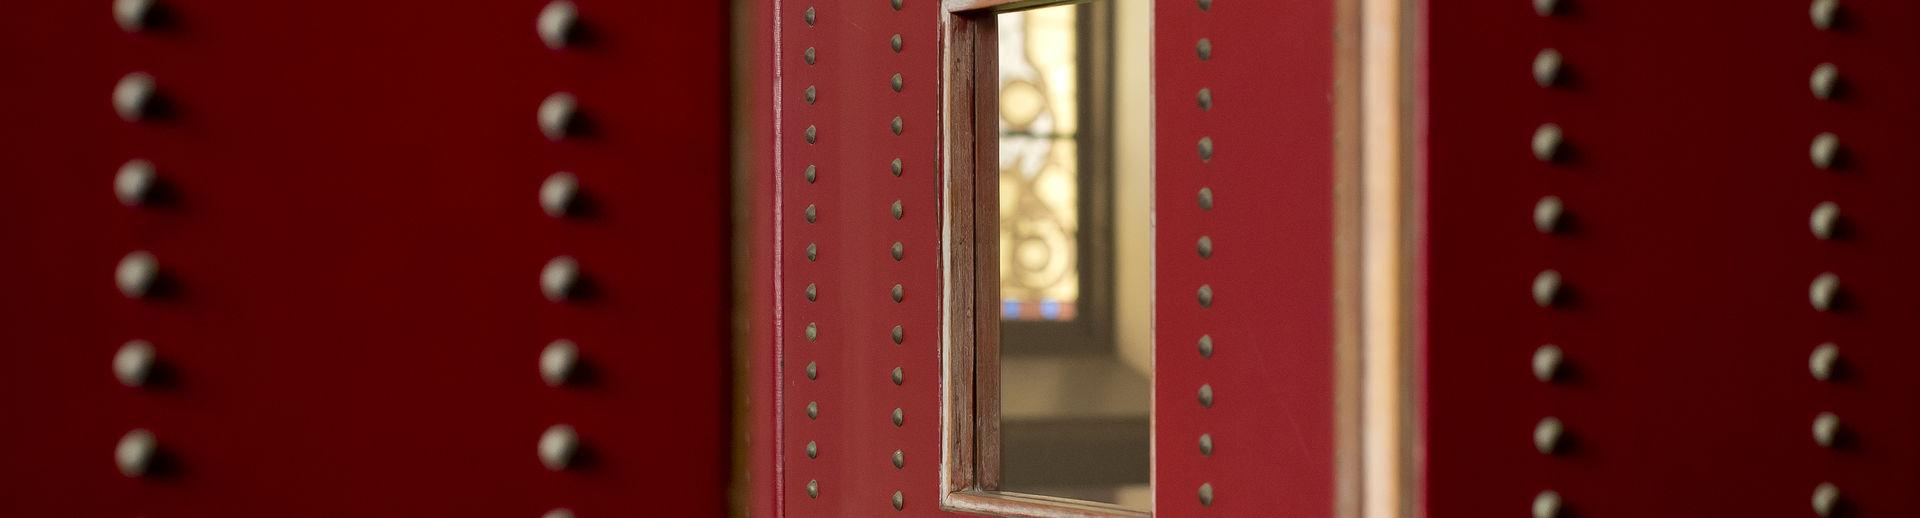 红色镜框内的一面镜子和挂满饰钉的墙壁的特写.